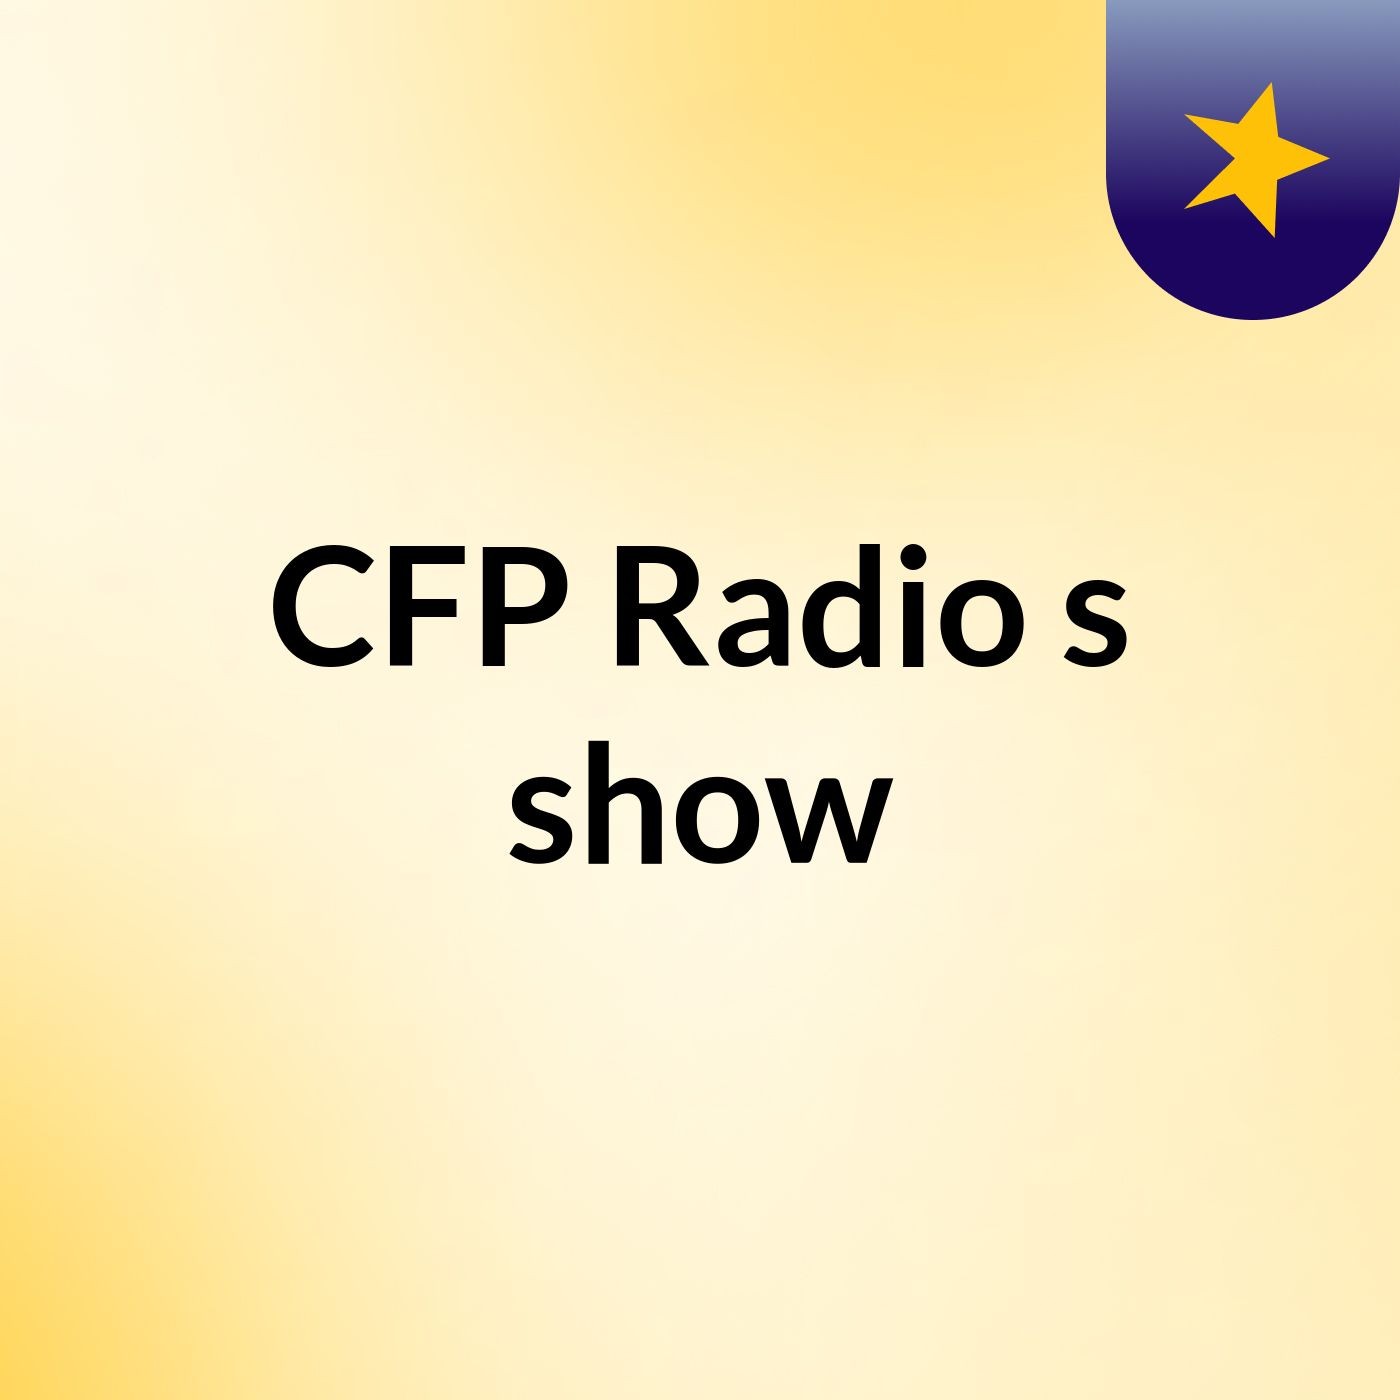 CFP Radio's show